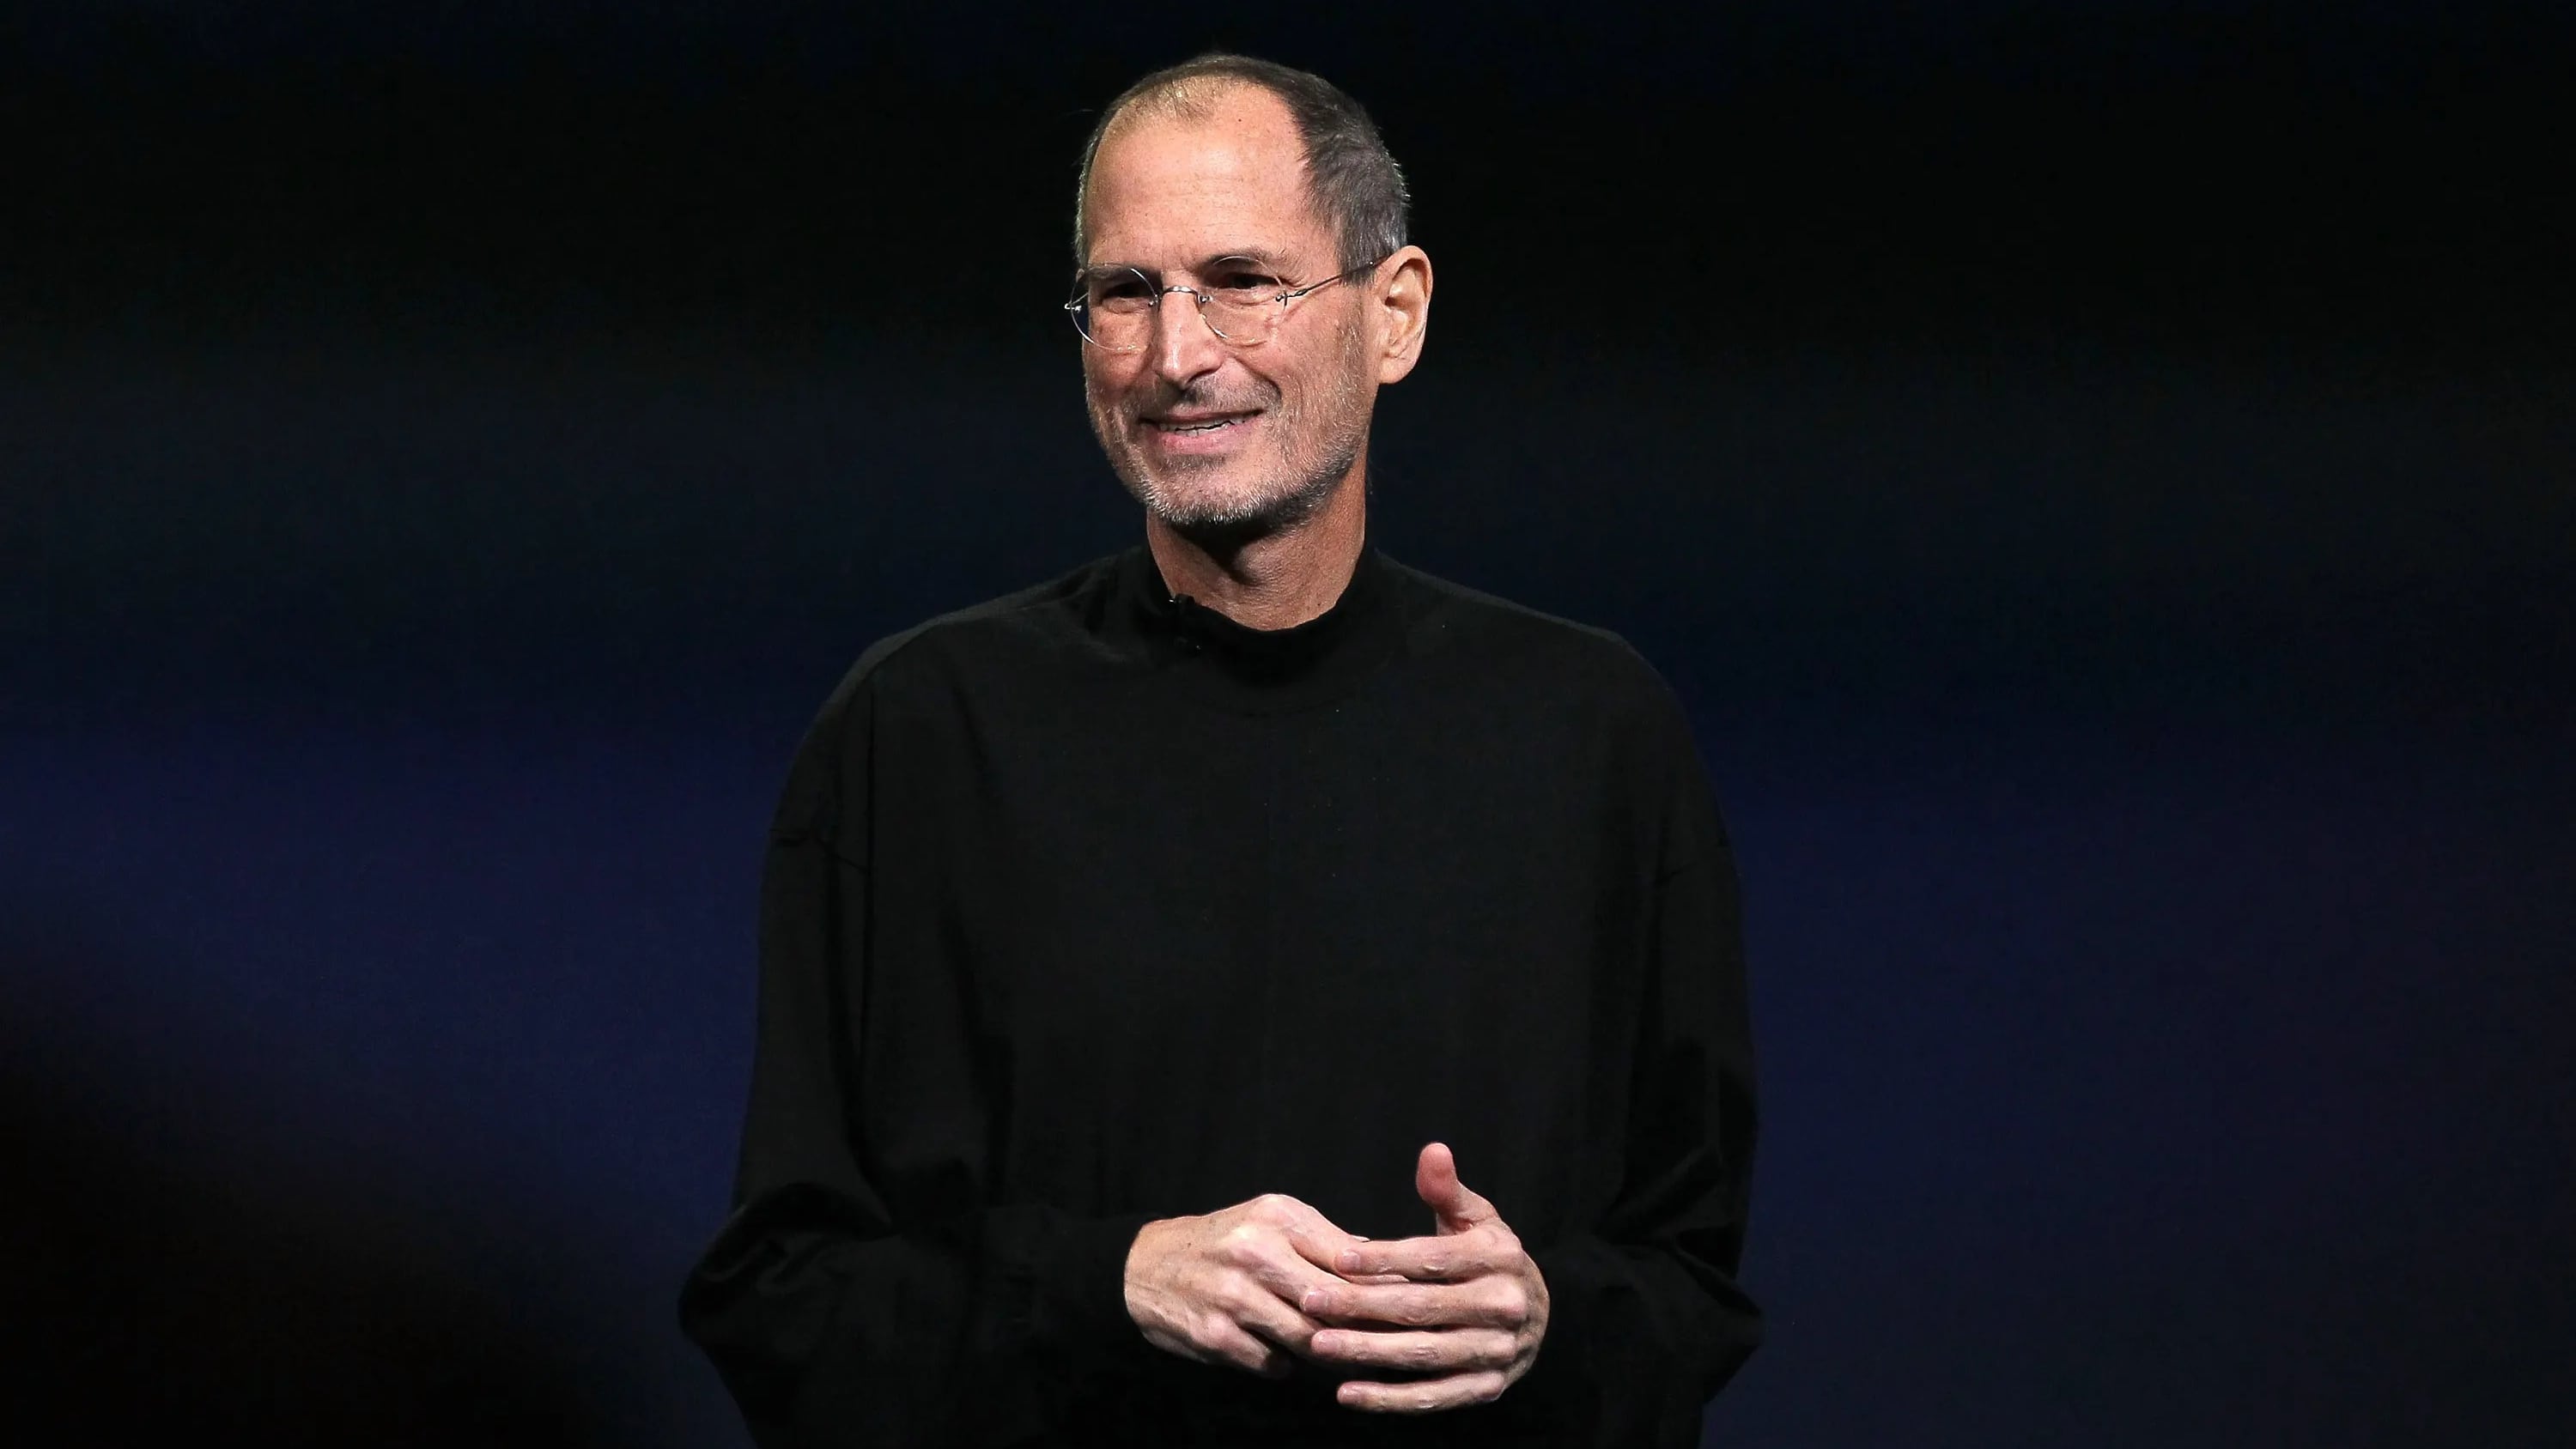 A Peso Pluma se le olvidó que Steve Jobs está muerto y le pidió una batería para su iPad durante una entrevista, desatando reacciones en redes sociales.